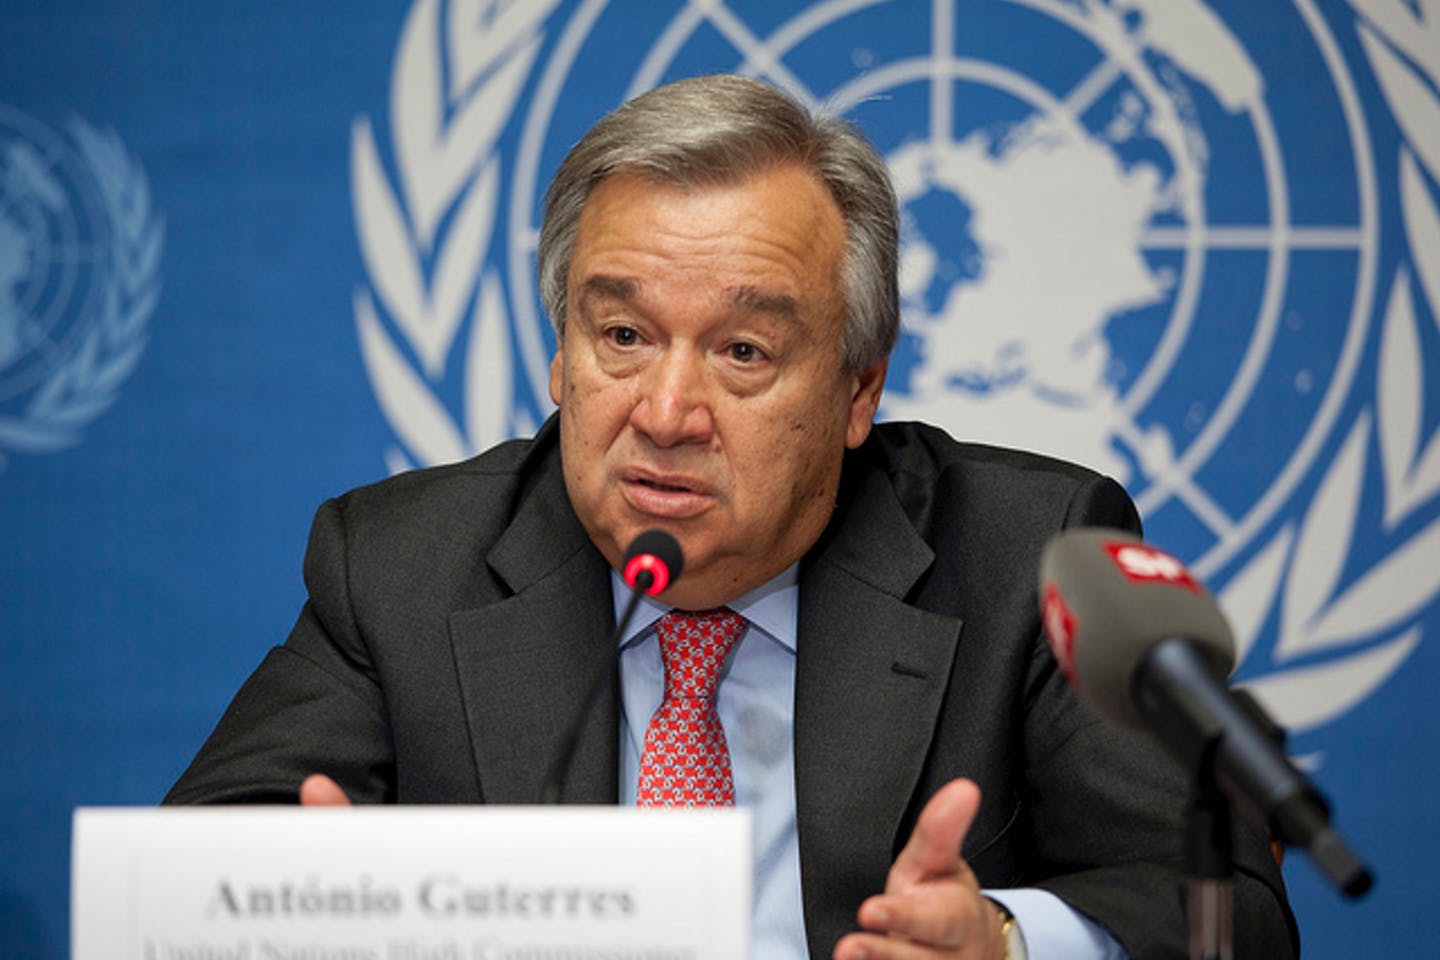 UN secretary-general Antonio Guetrres